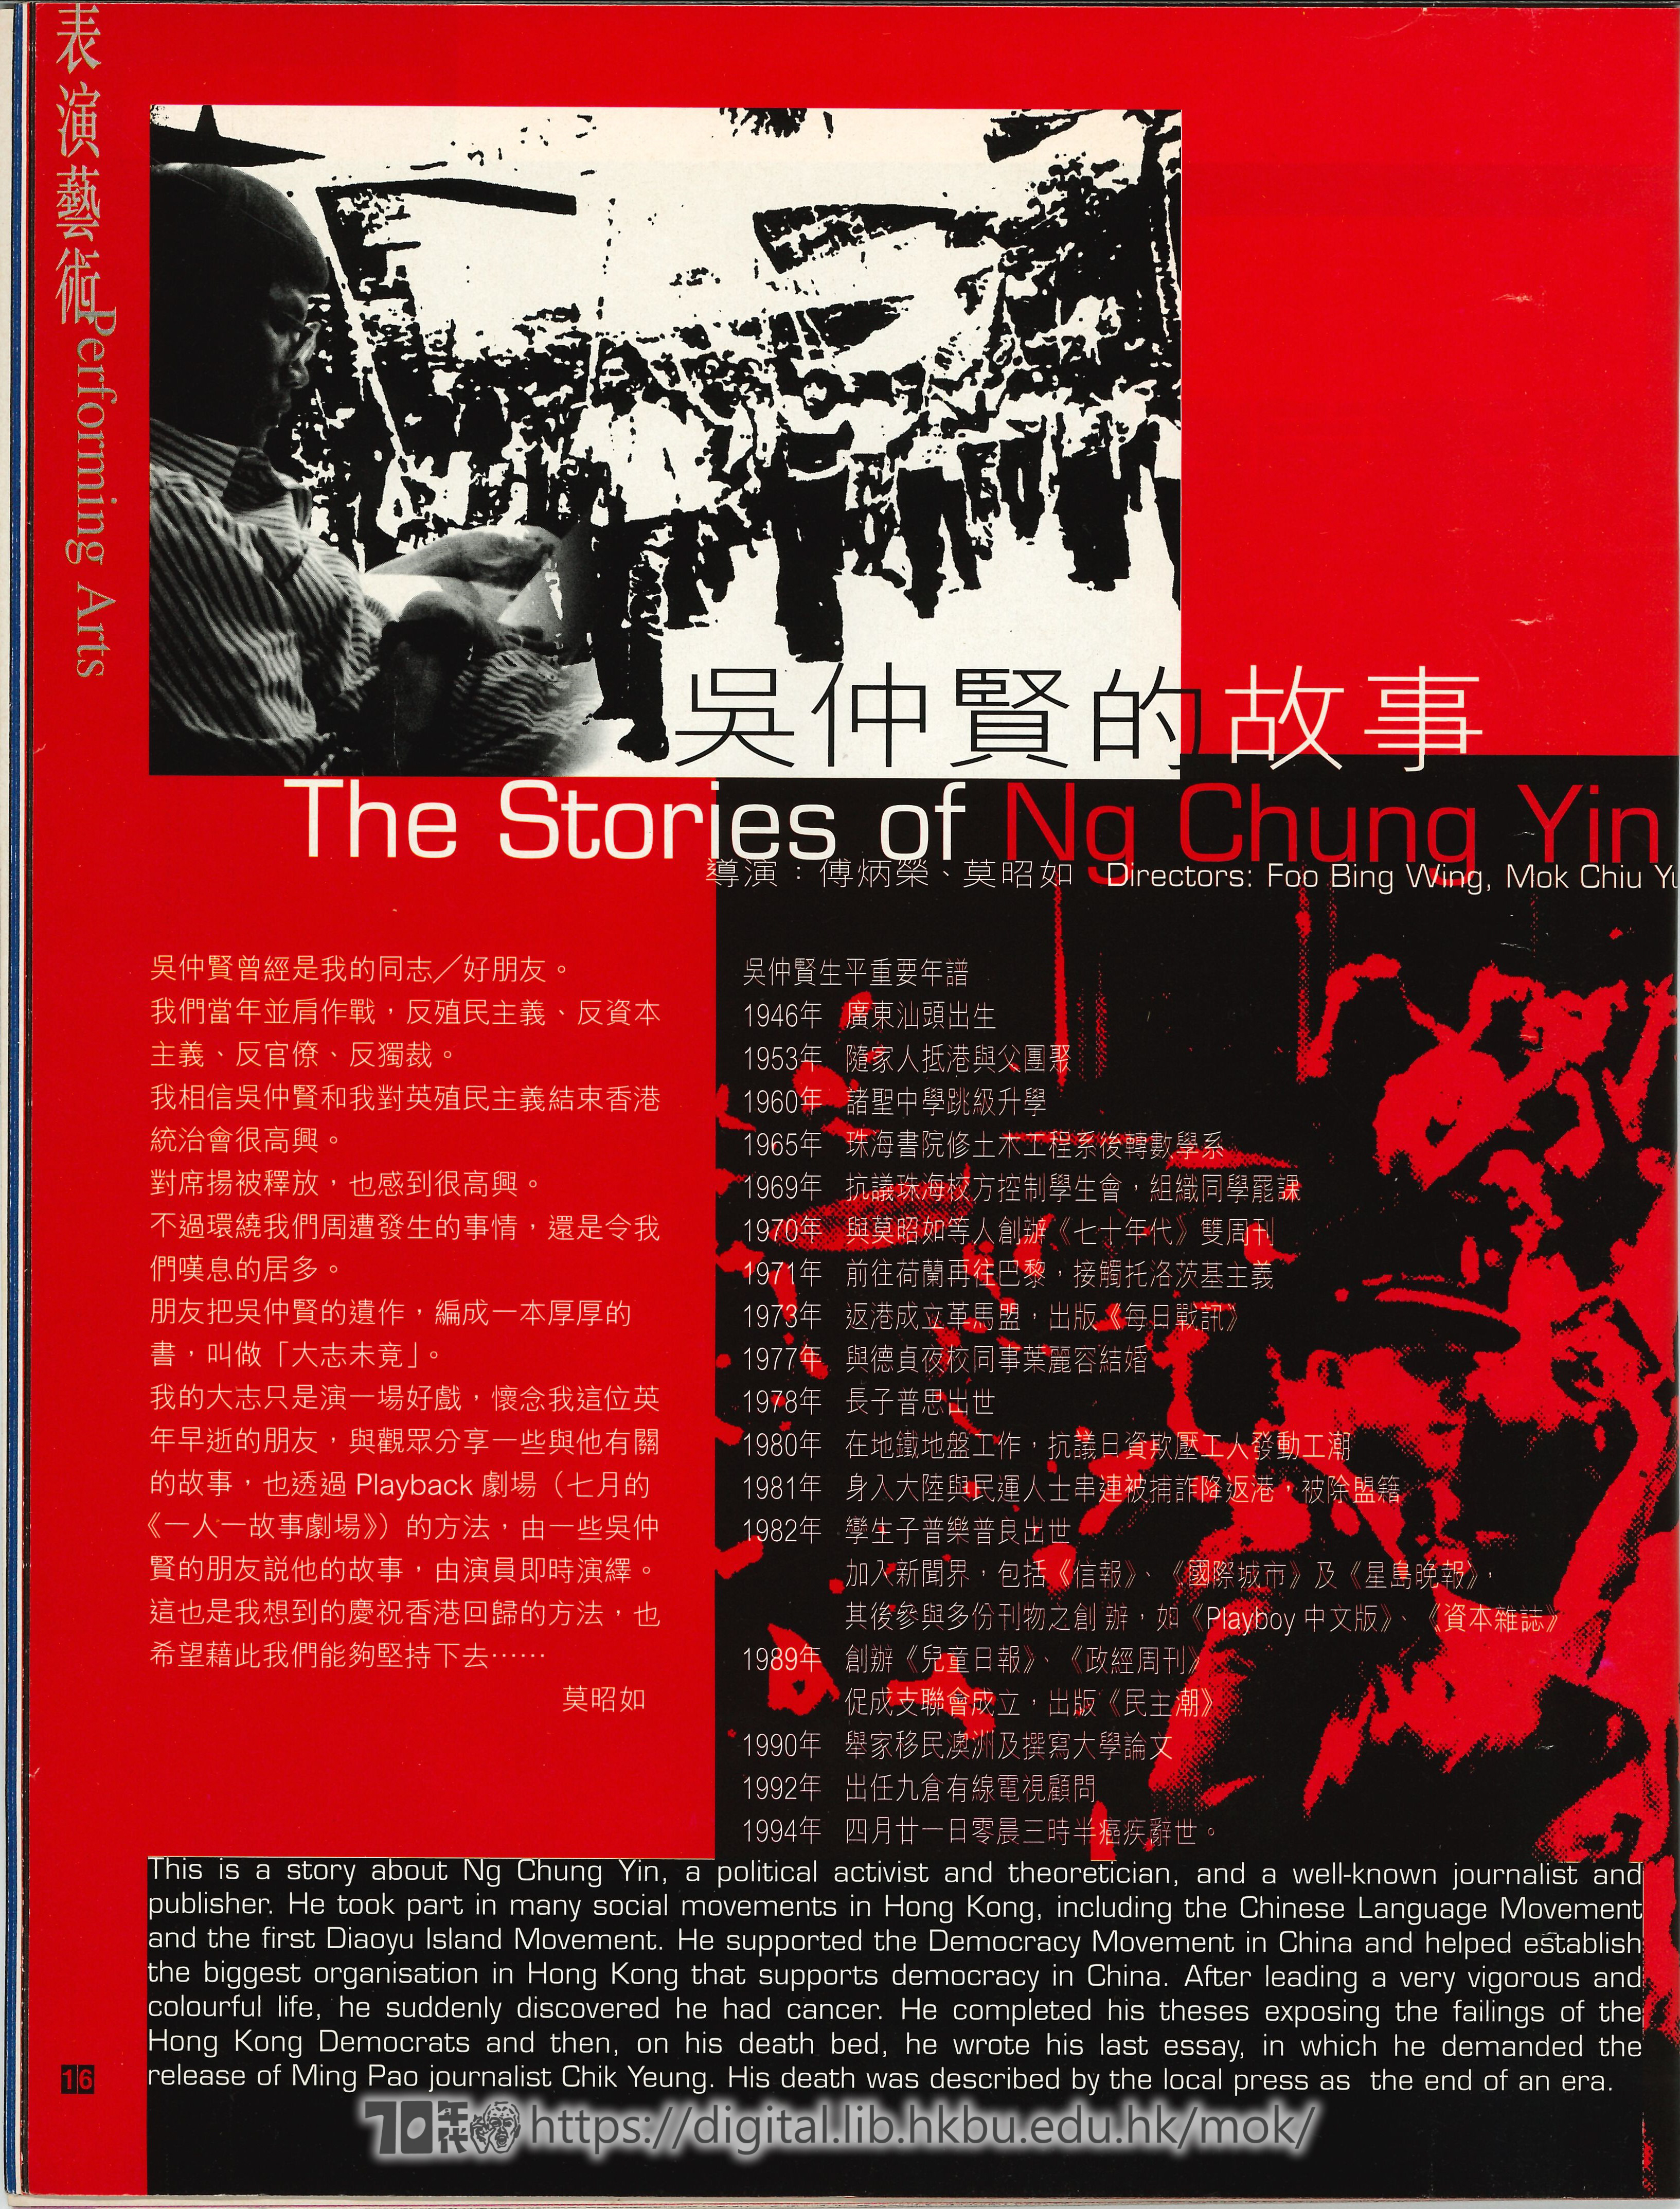 The Story of Ng Chung Yin  Stories of Ng Chun Yin  